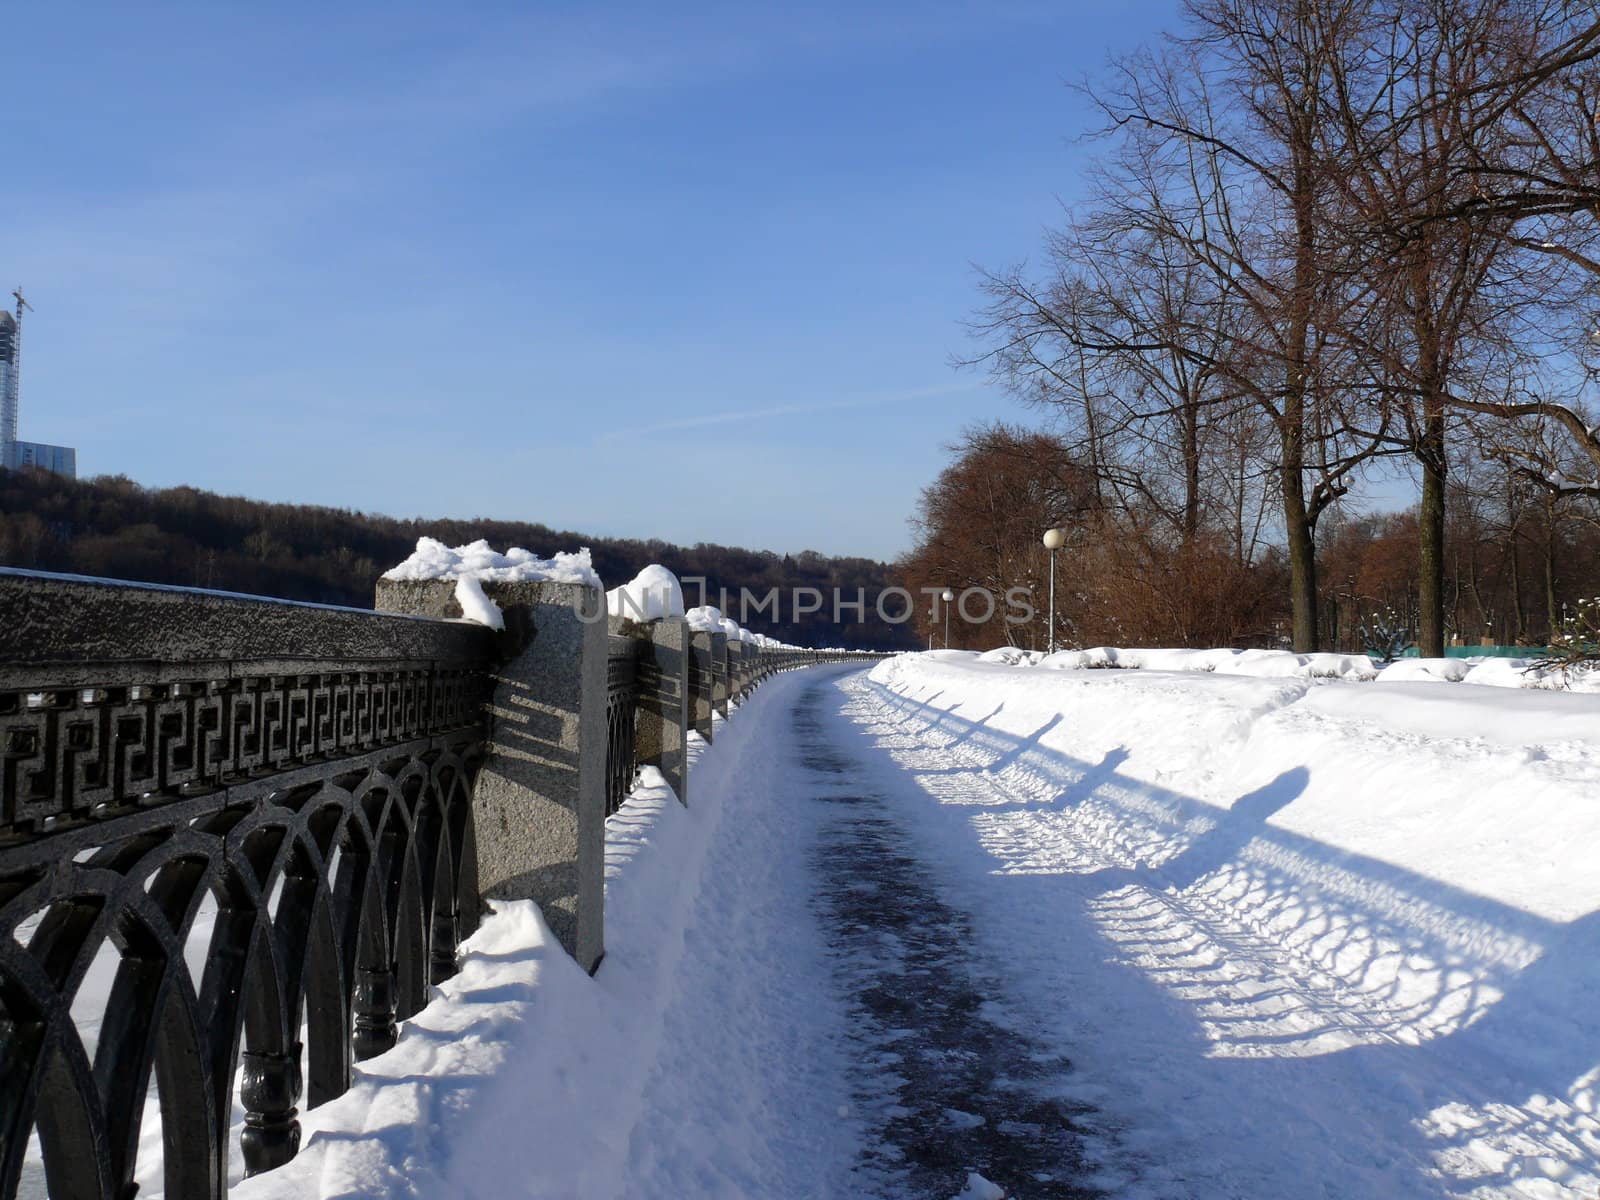 Luzhnetskaya embankment in winter. Moscow, Russia by Stoyanov